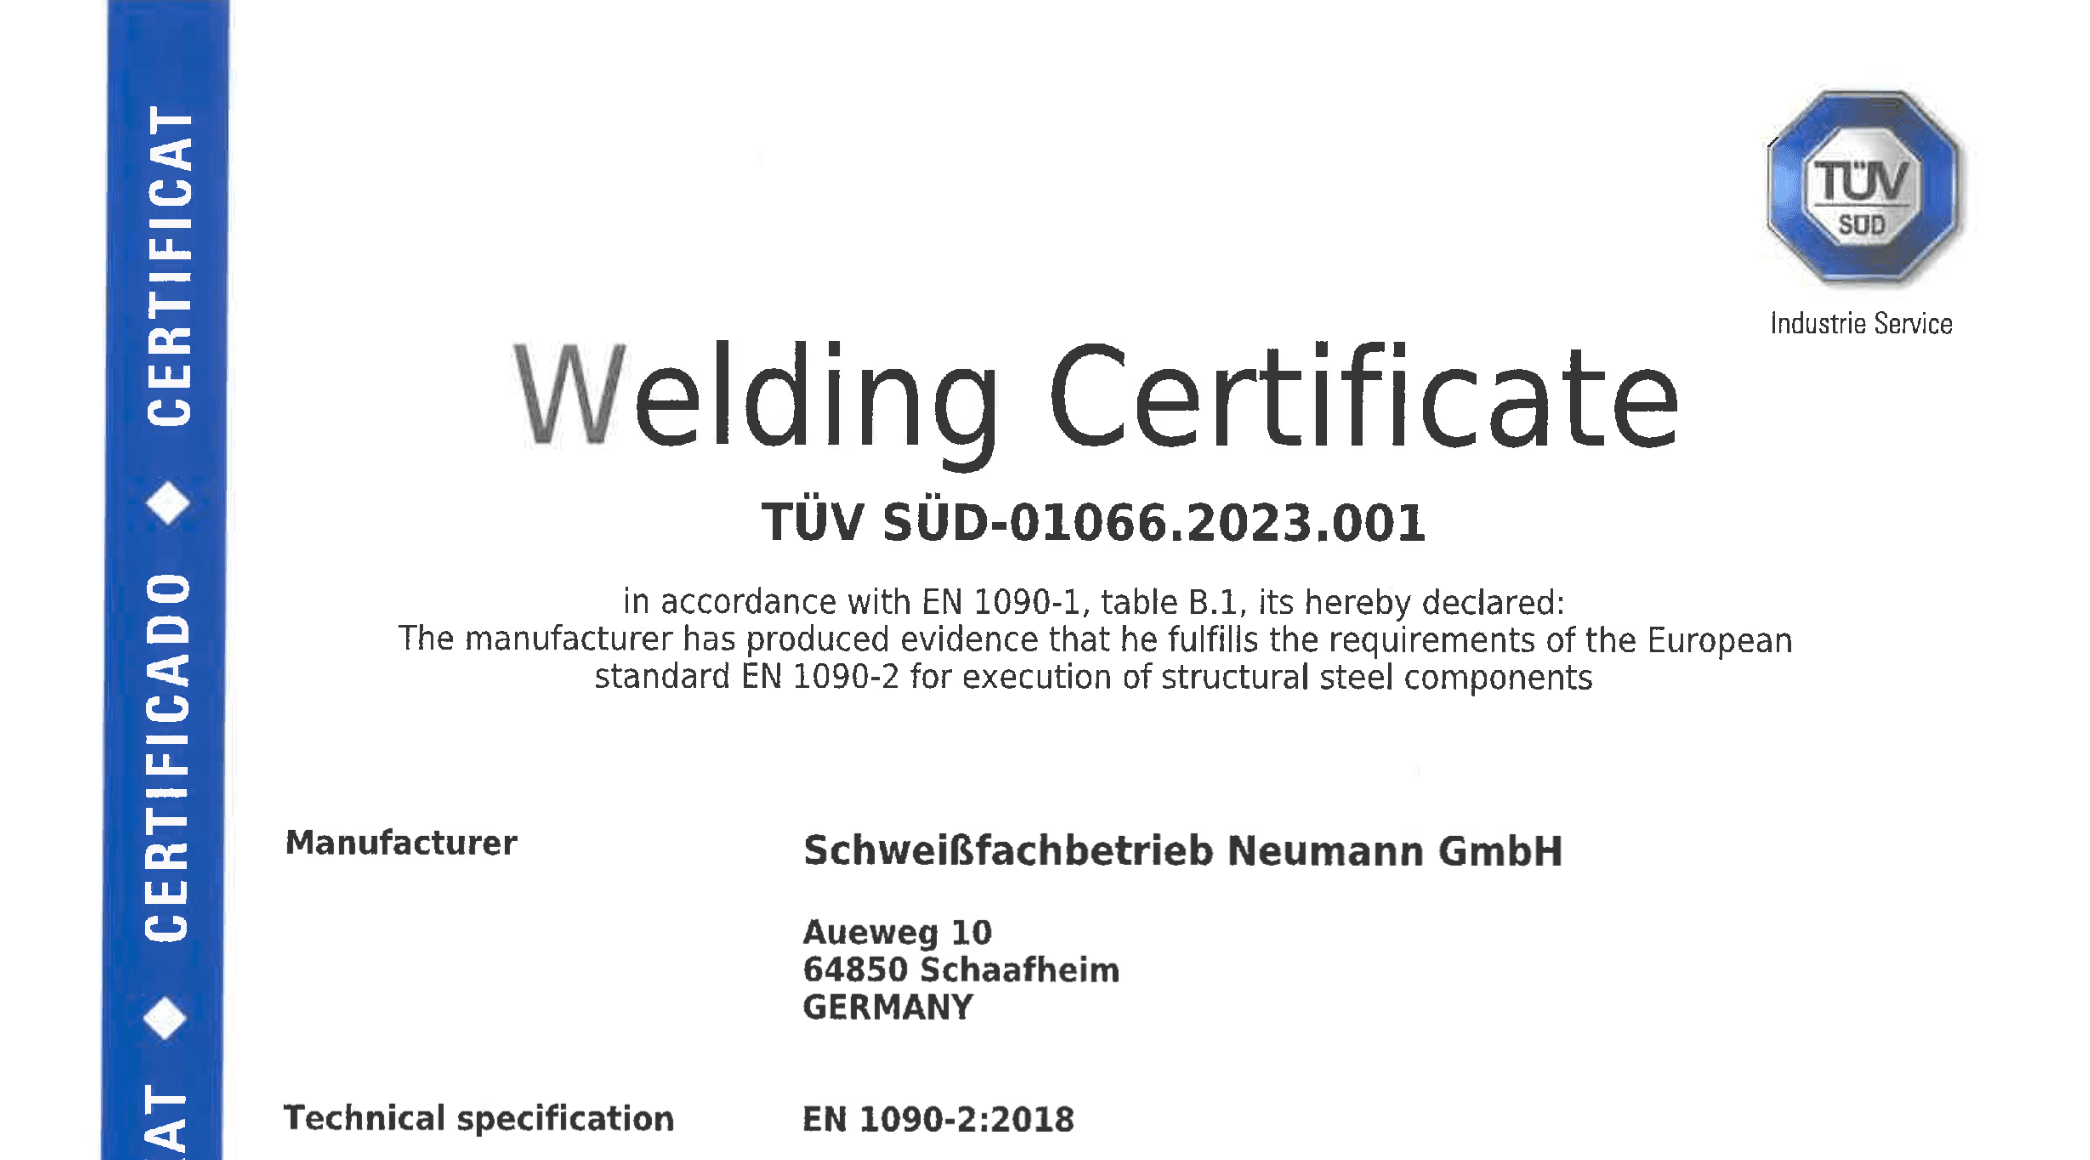 Welding Certificate EXC2 according to EN 1090-2 Zertifikat